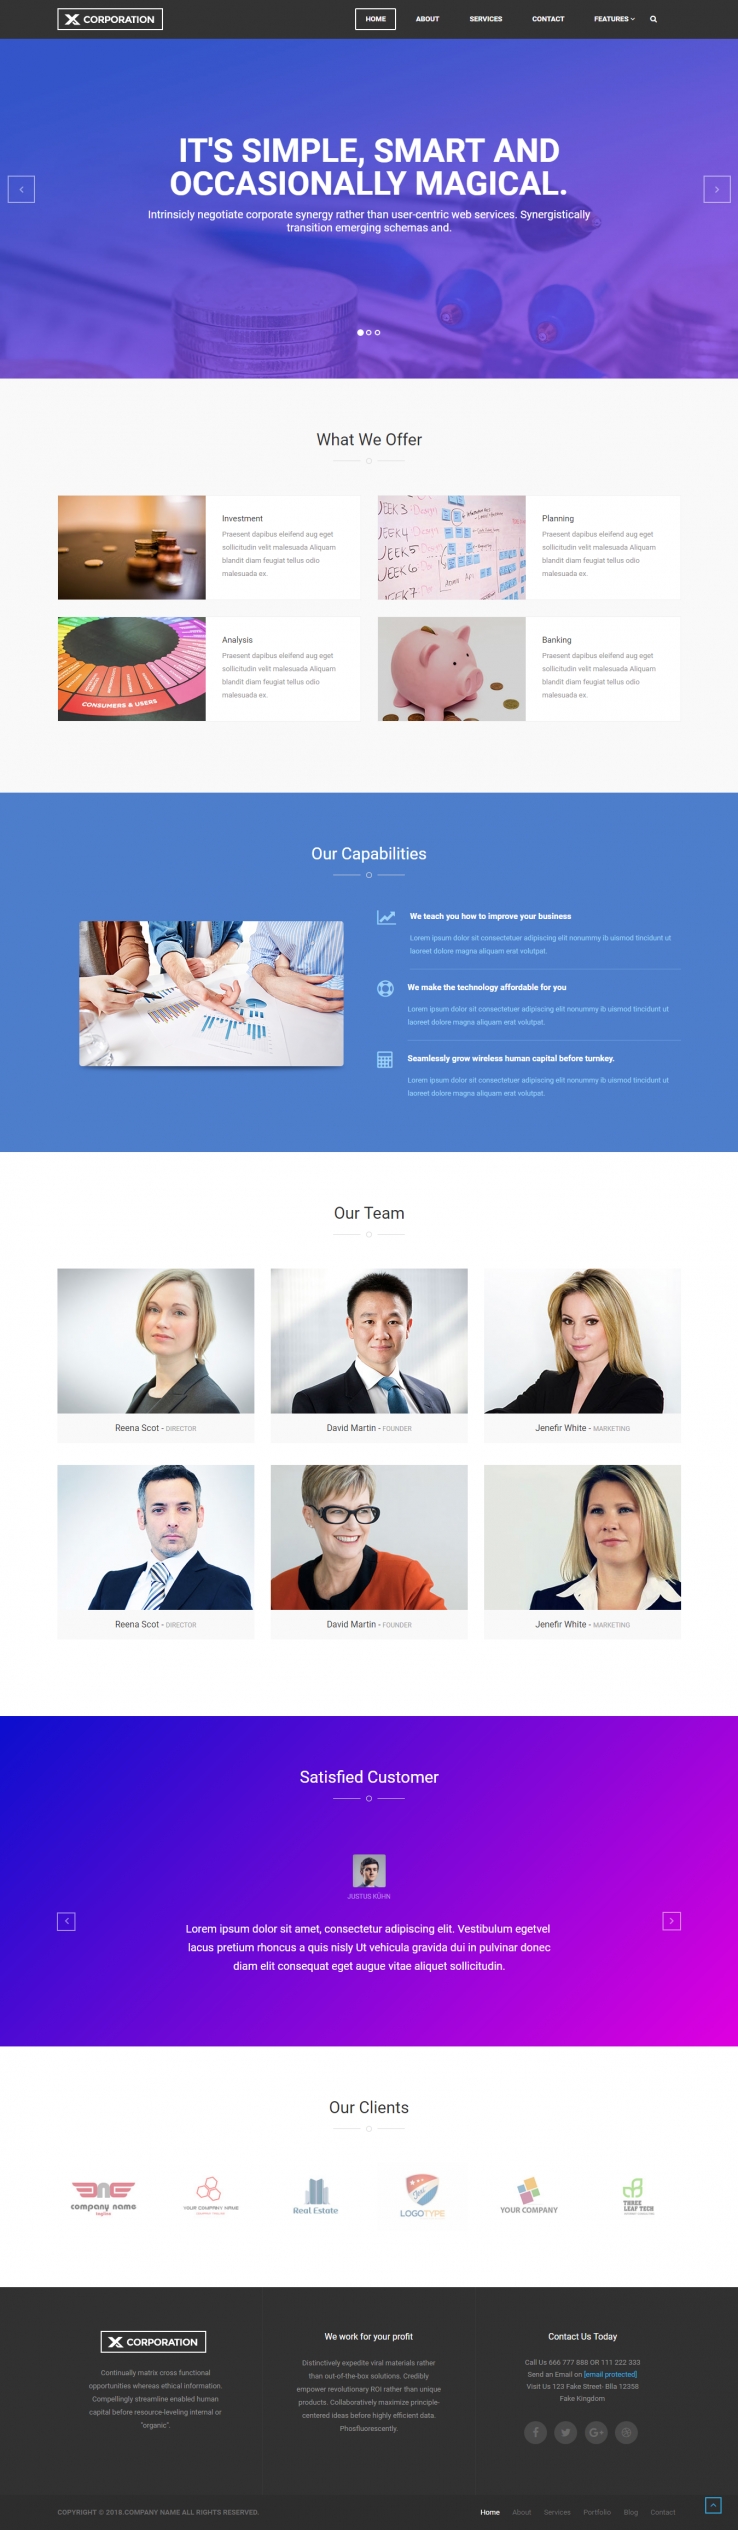 蓝色简洁风格的商业调查分析企业网站源码下载